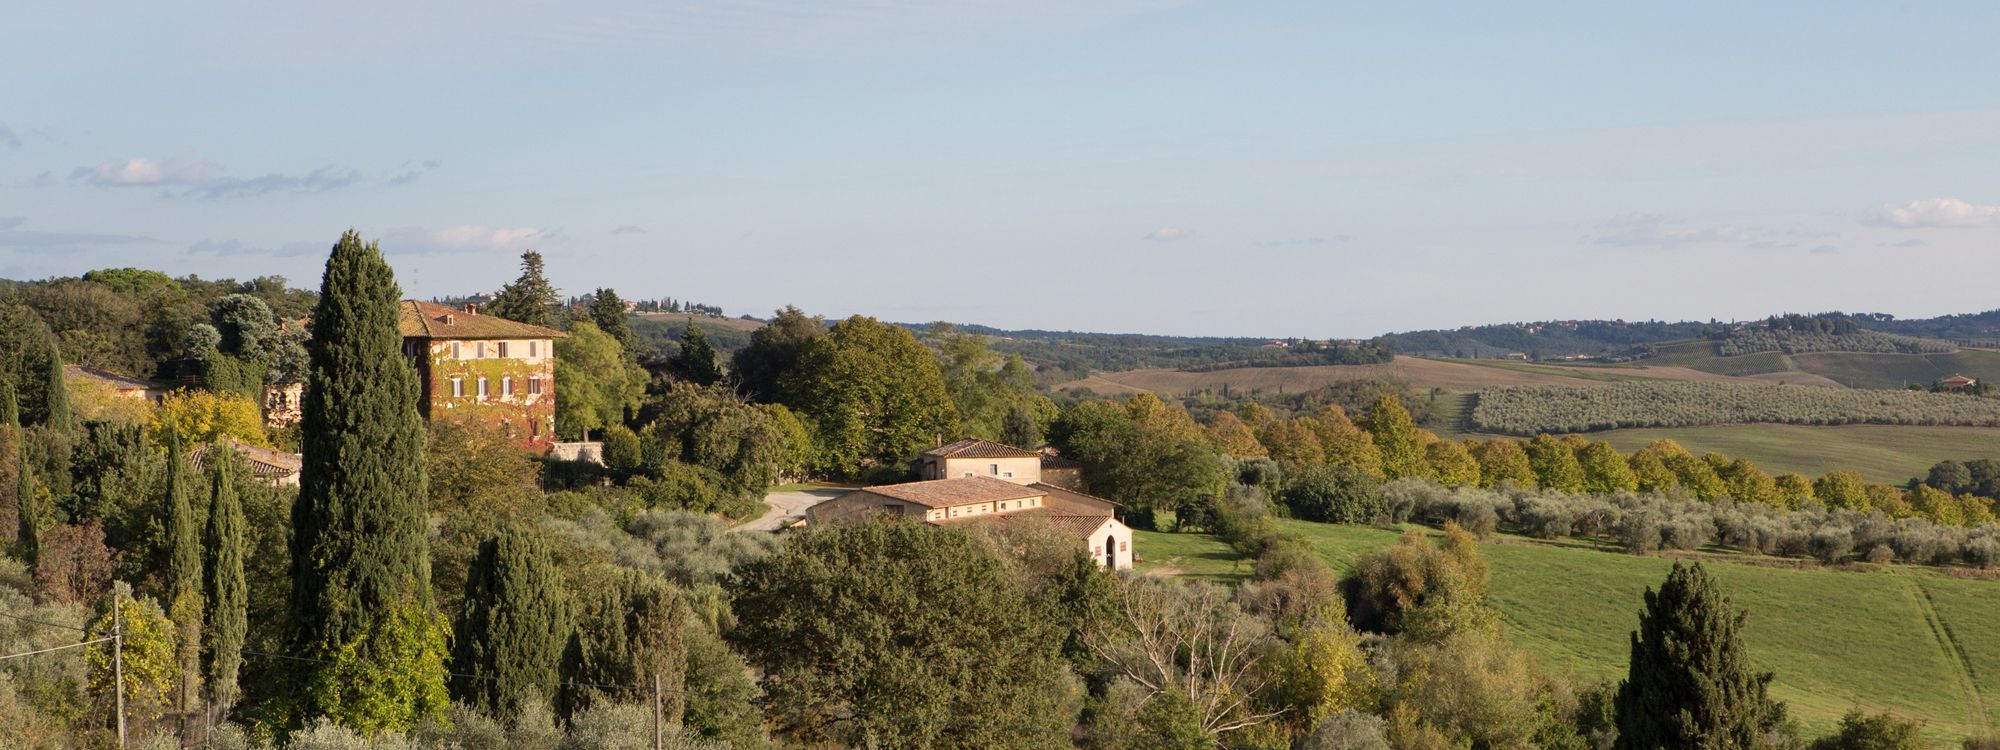 Tenuta di Lilliano Chianti Classico DOCG Tuscany, Holiday Villas Rental